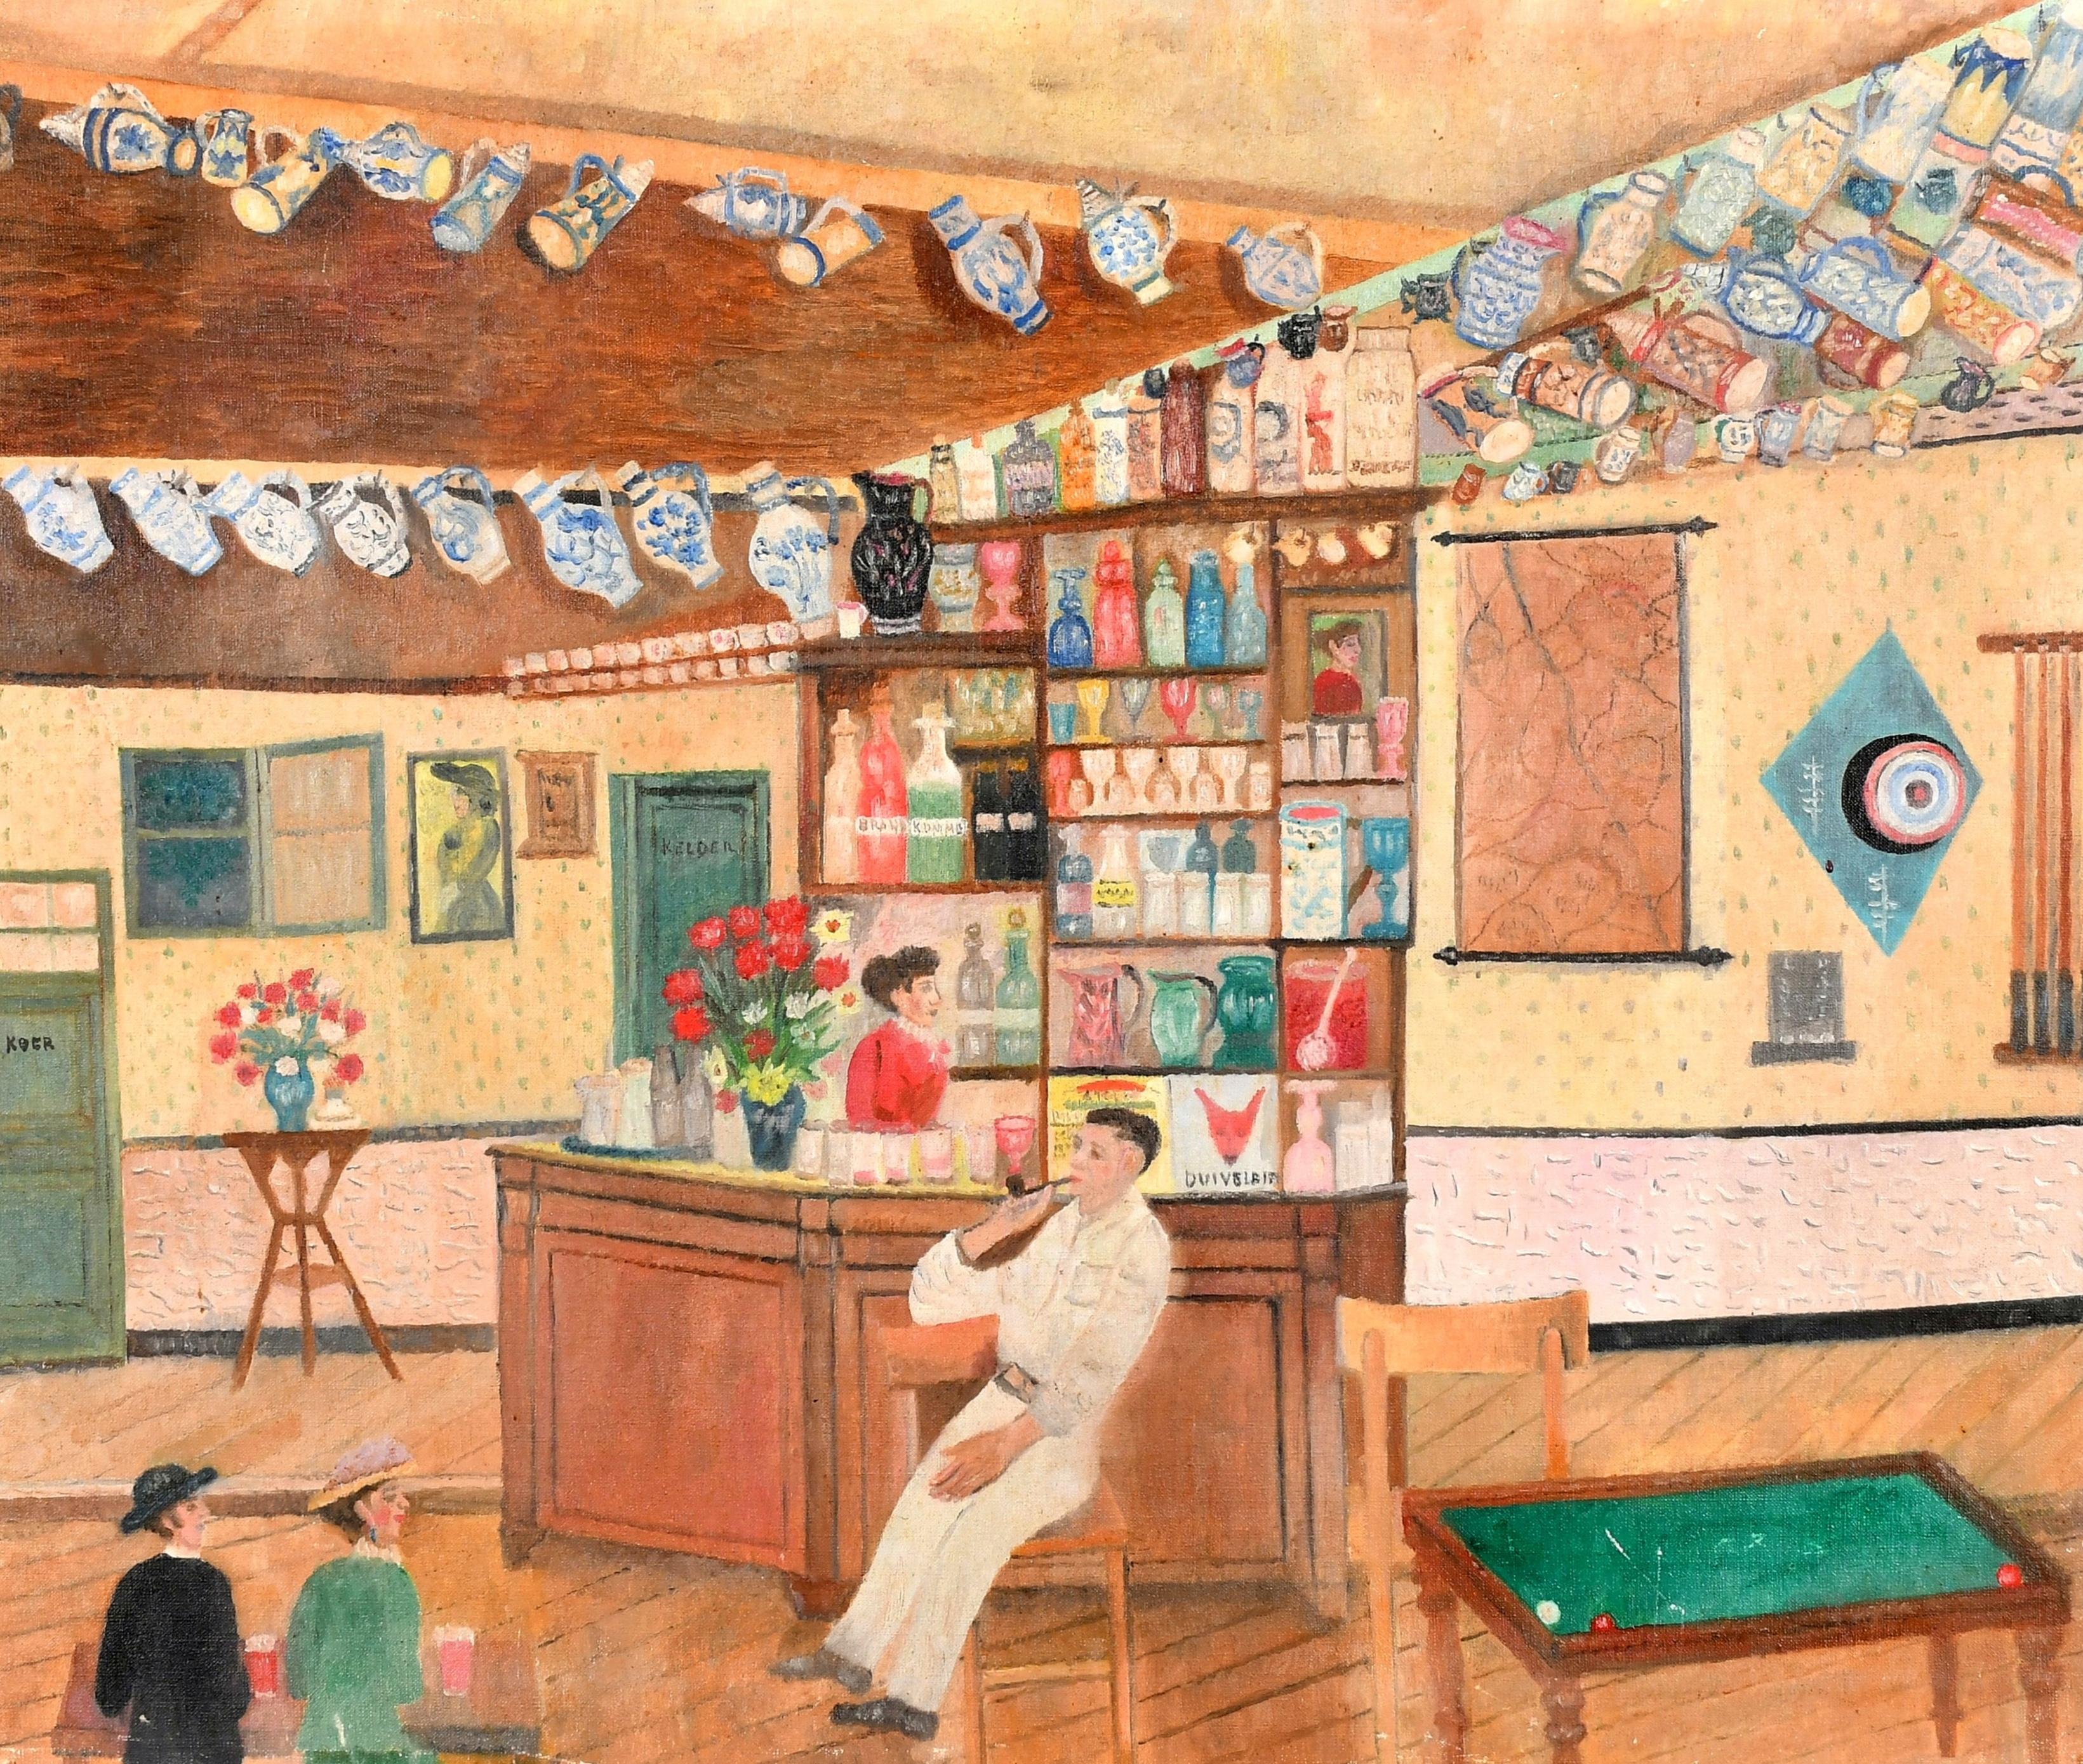 Interior Painting Mid 20th Century Dutch School - Le bar - Peinture figurative d'un intérieur naïf hollandais du milieu du 20e siècle